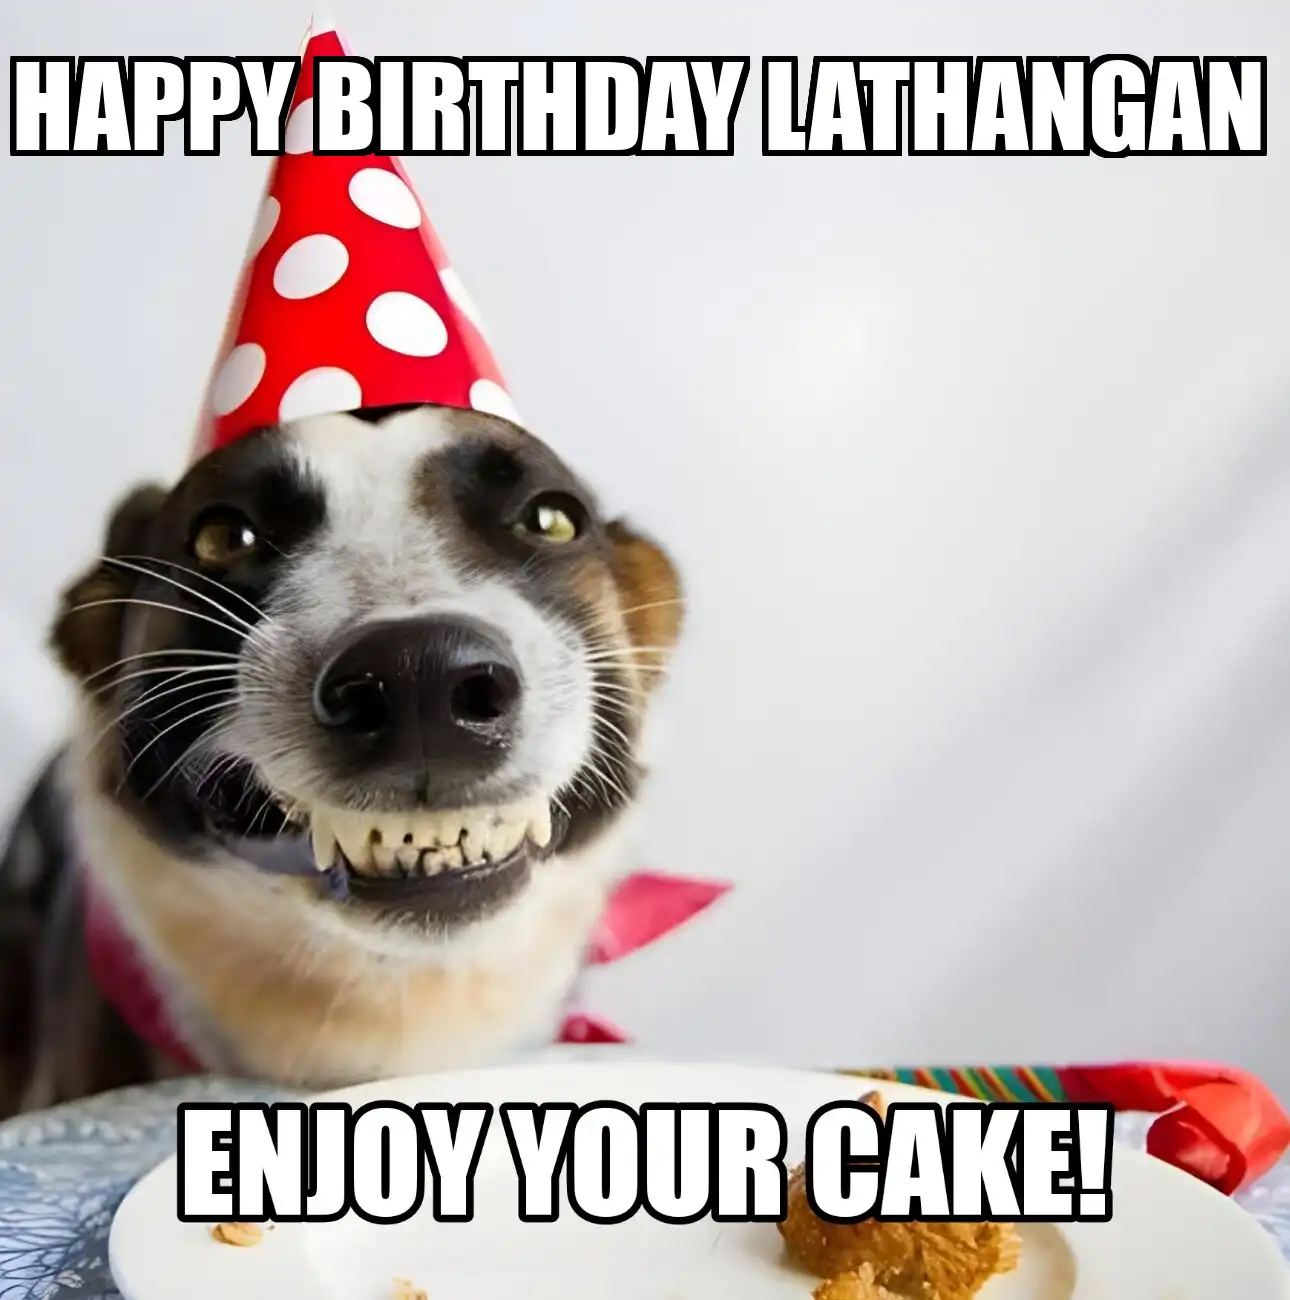 Happy Birthday Lathangan Enjoy Your Cake Dog Meme